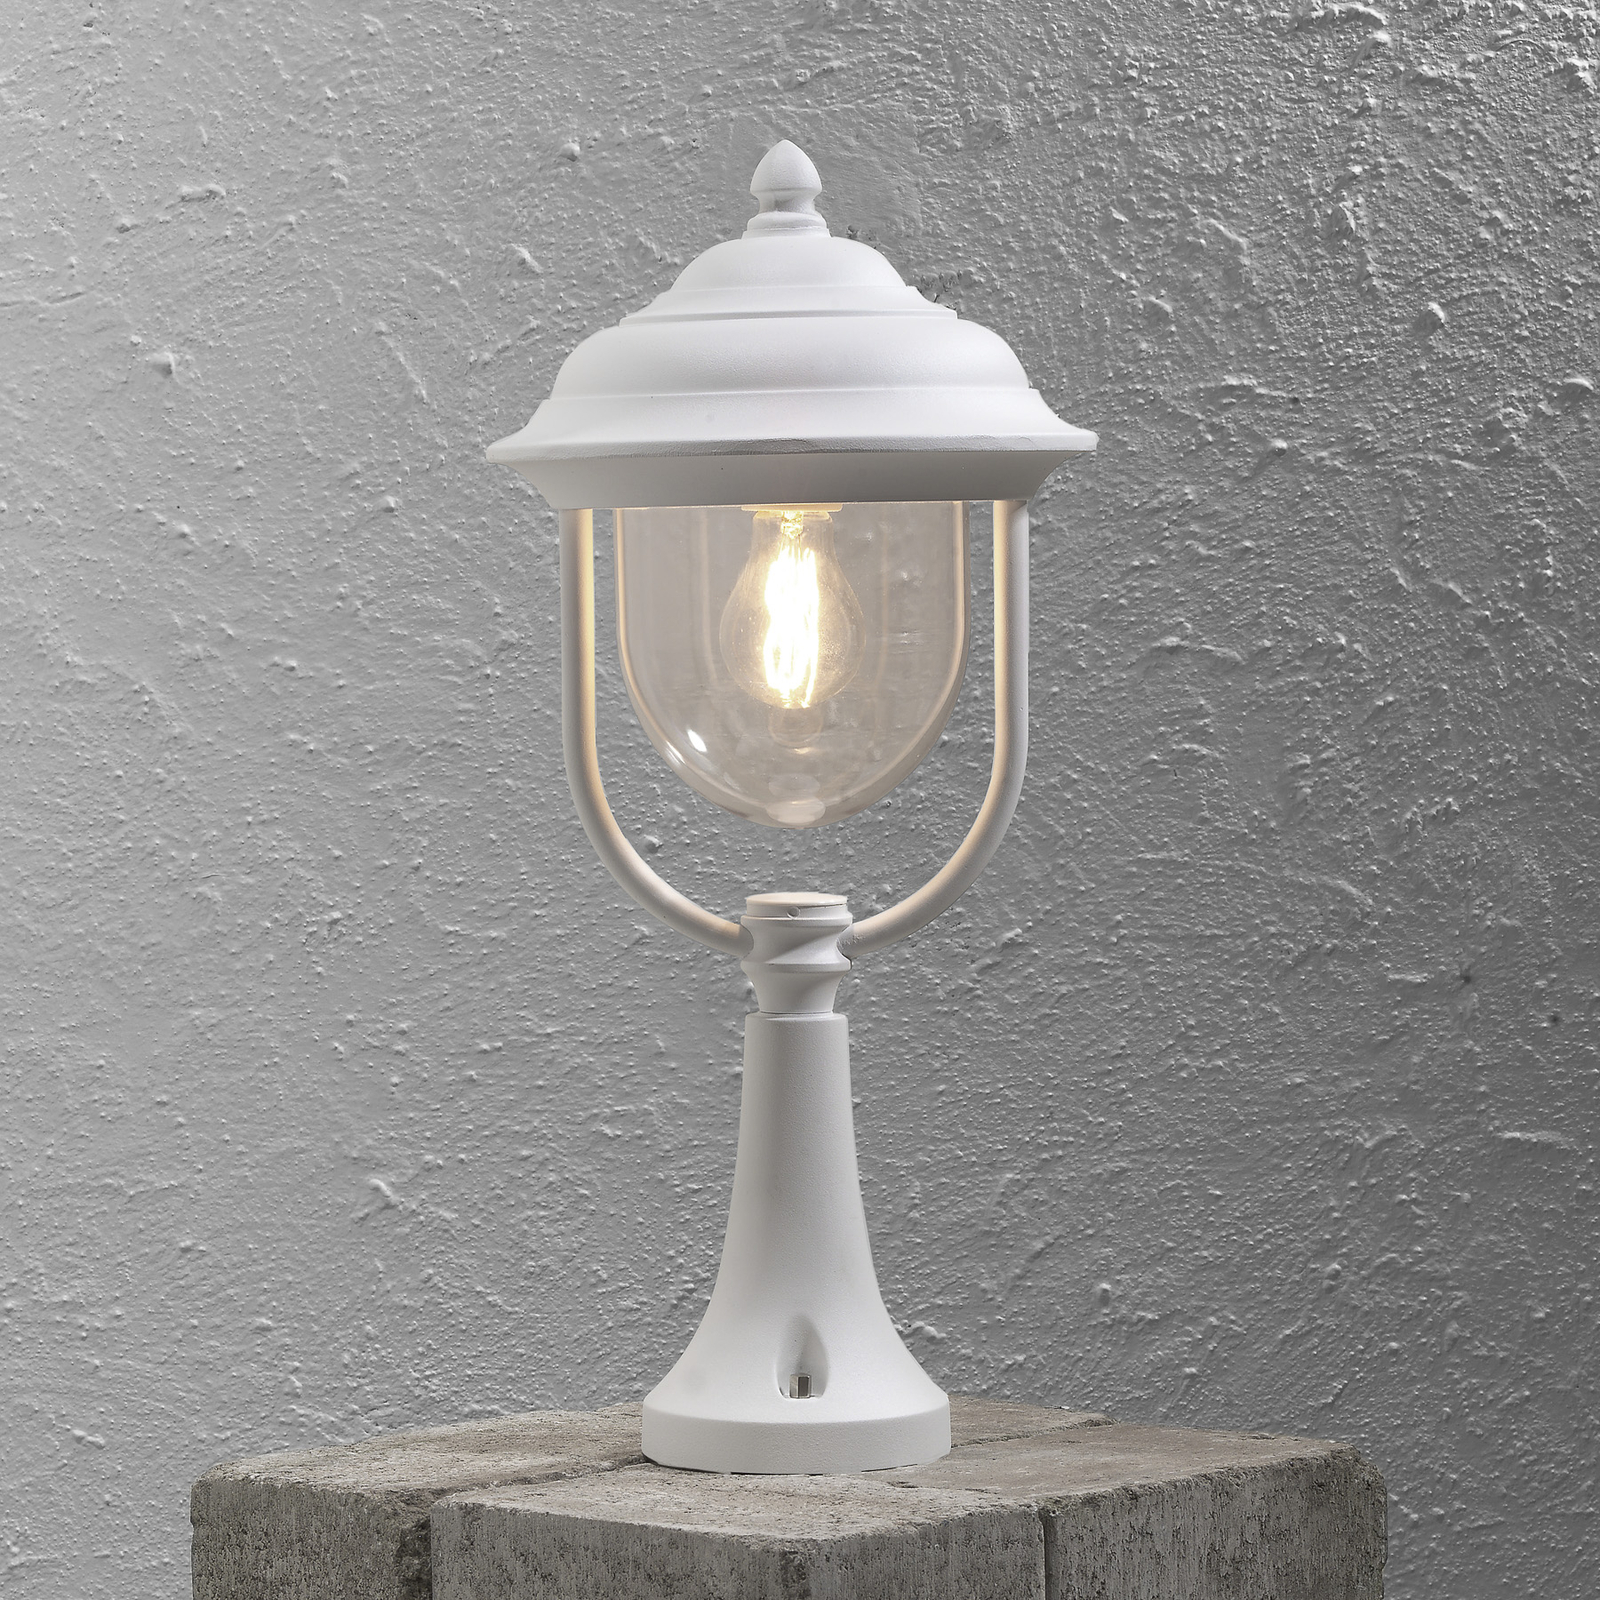 Bellissima lampada con piedistallo Parma, bianca